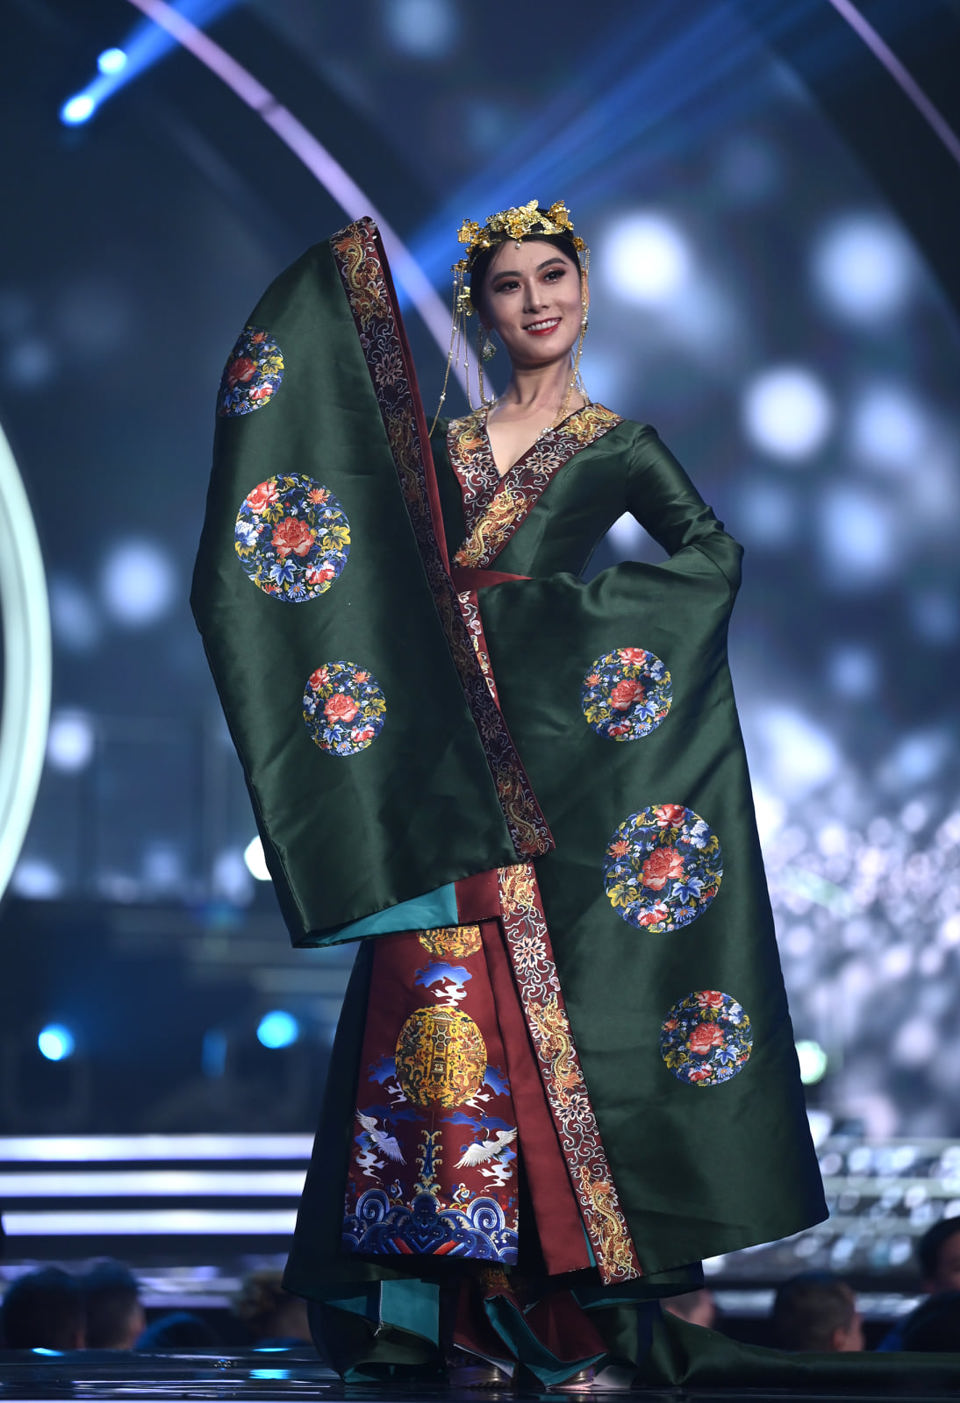 Ngắm trang phục dân tộc cầu kỳ nhất tại Hoa hậu Hoàn vũ 2021 - Ảnh 41